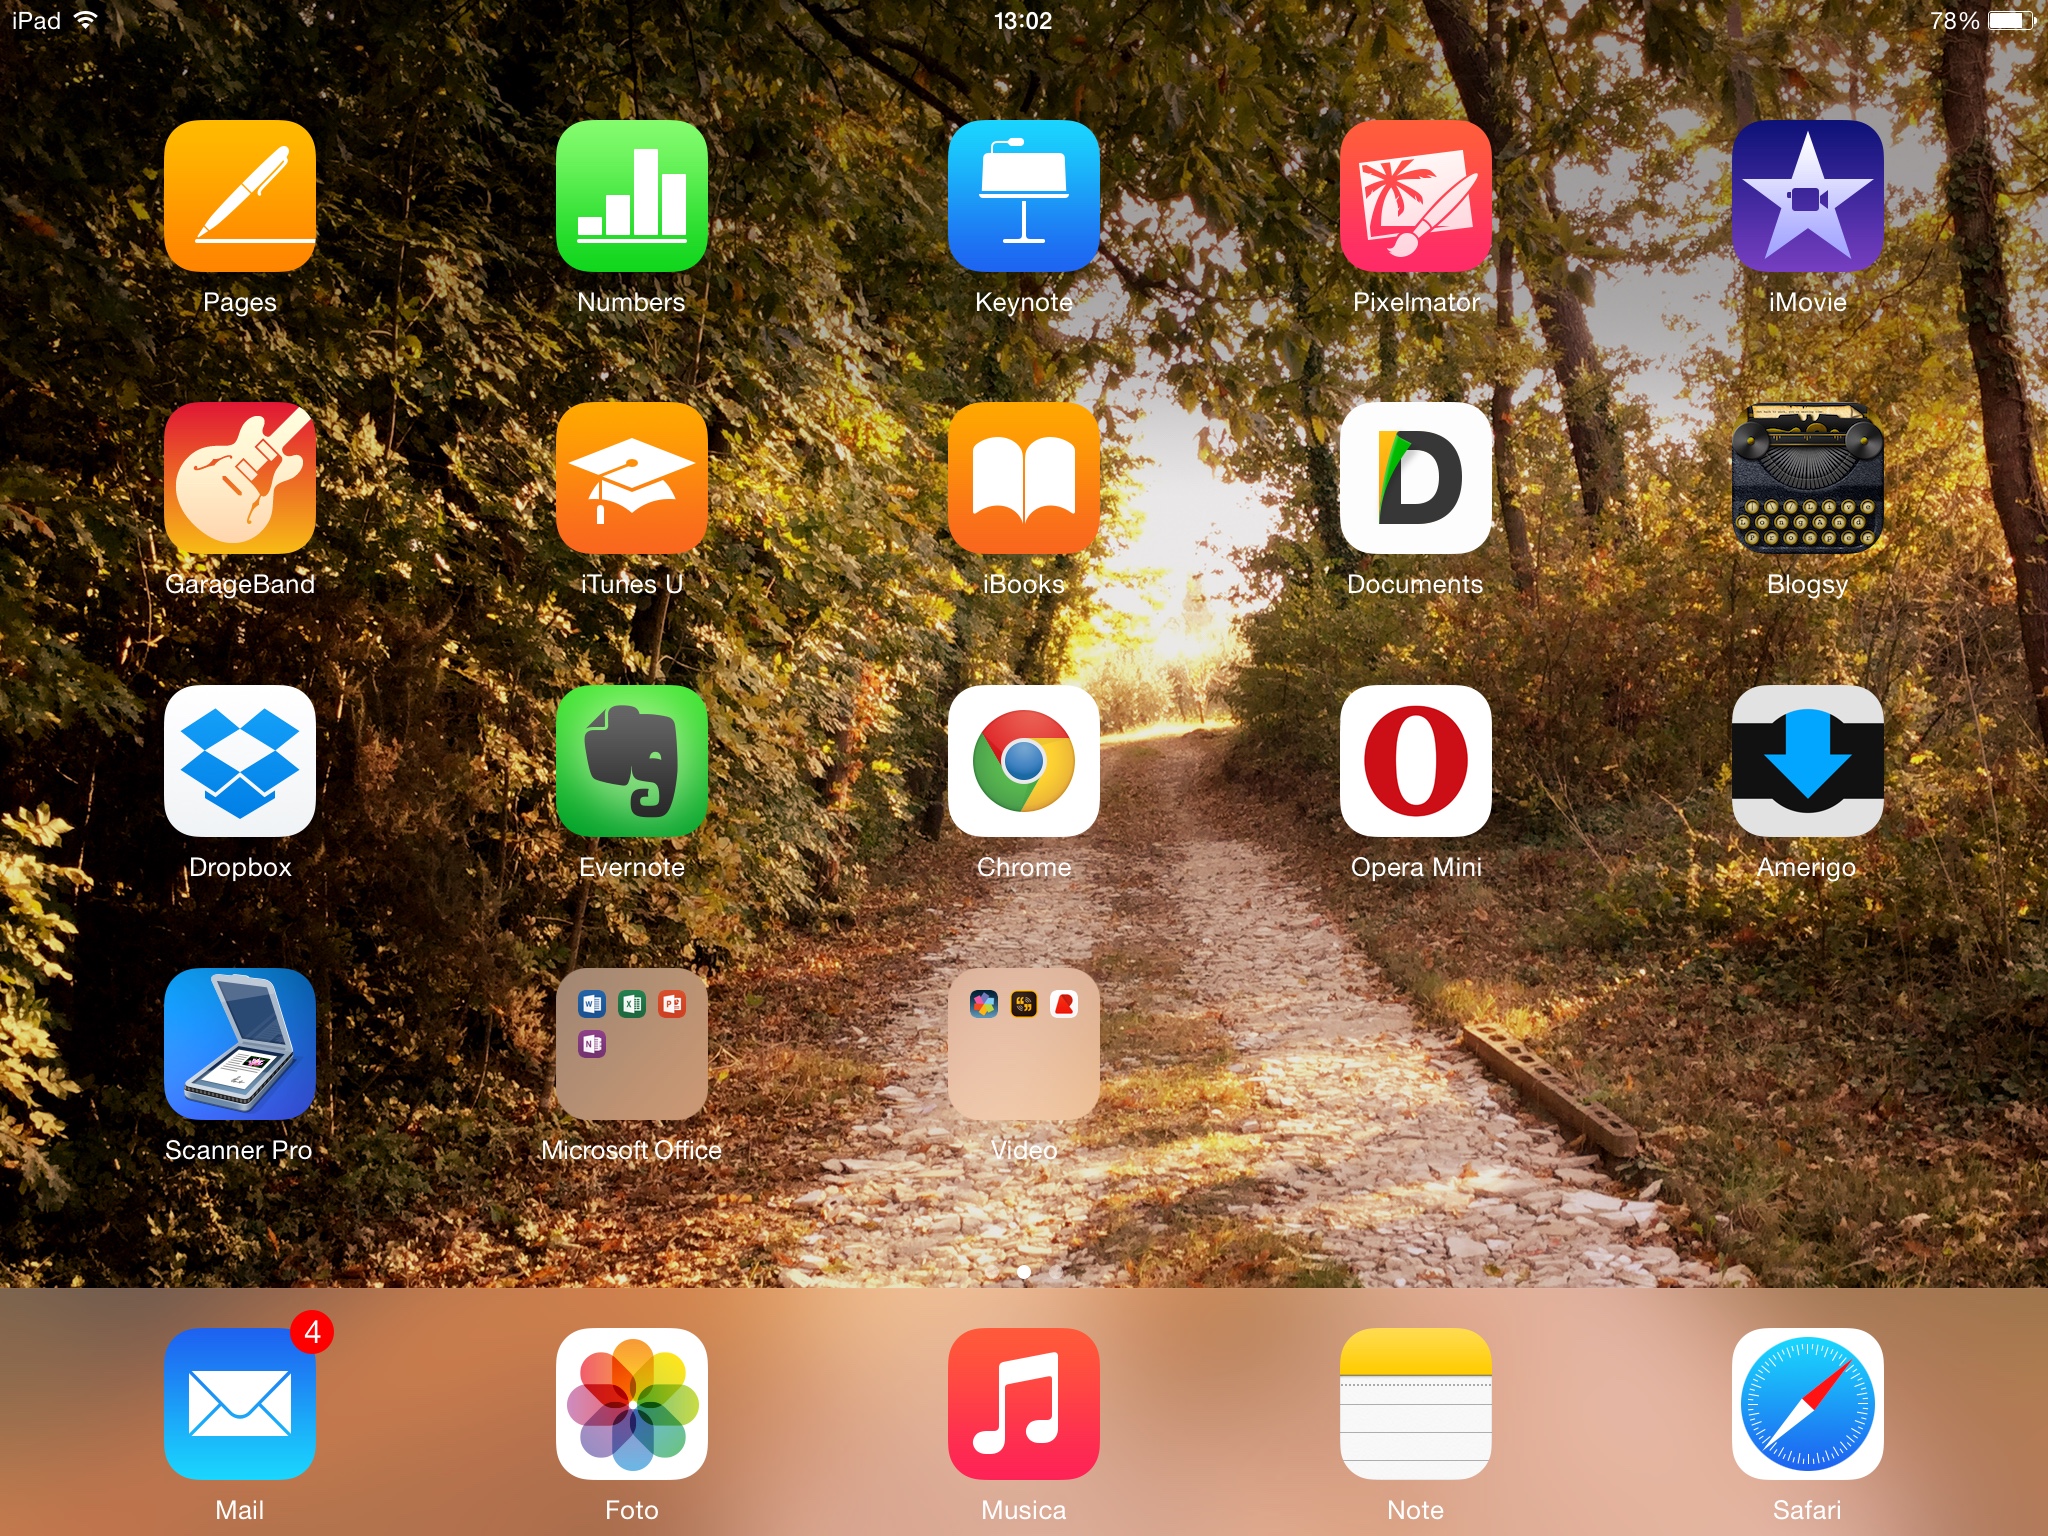 Applicazioni iPad verso un continuo aggiornamento: ecco le ultime